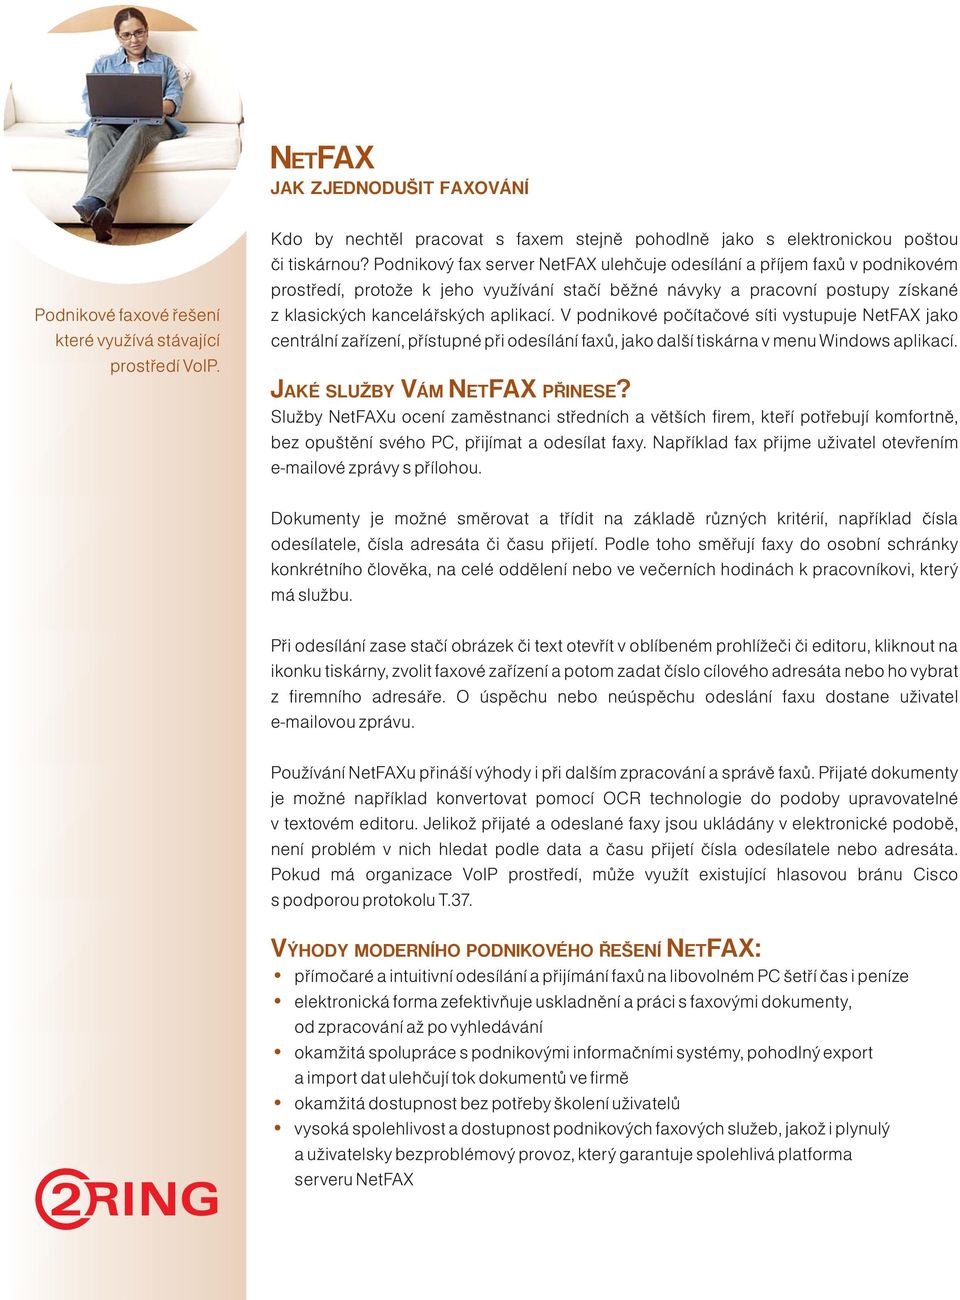 V podnikové počítačové síti vystupuje NetFAX jako centrální zařízení, přístupné při odesílání faxů, jako další tiskárna v menu Windows aplikací. JAKÉ SLUŽBY VÁM NETFAX PŘINESE?